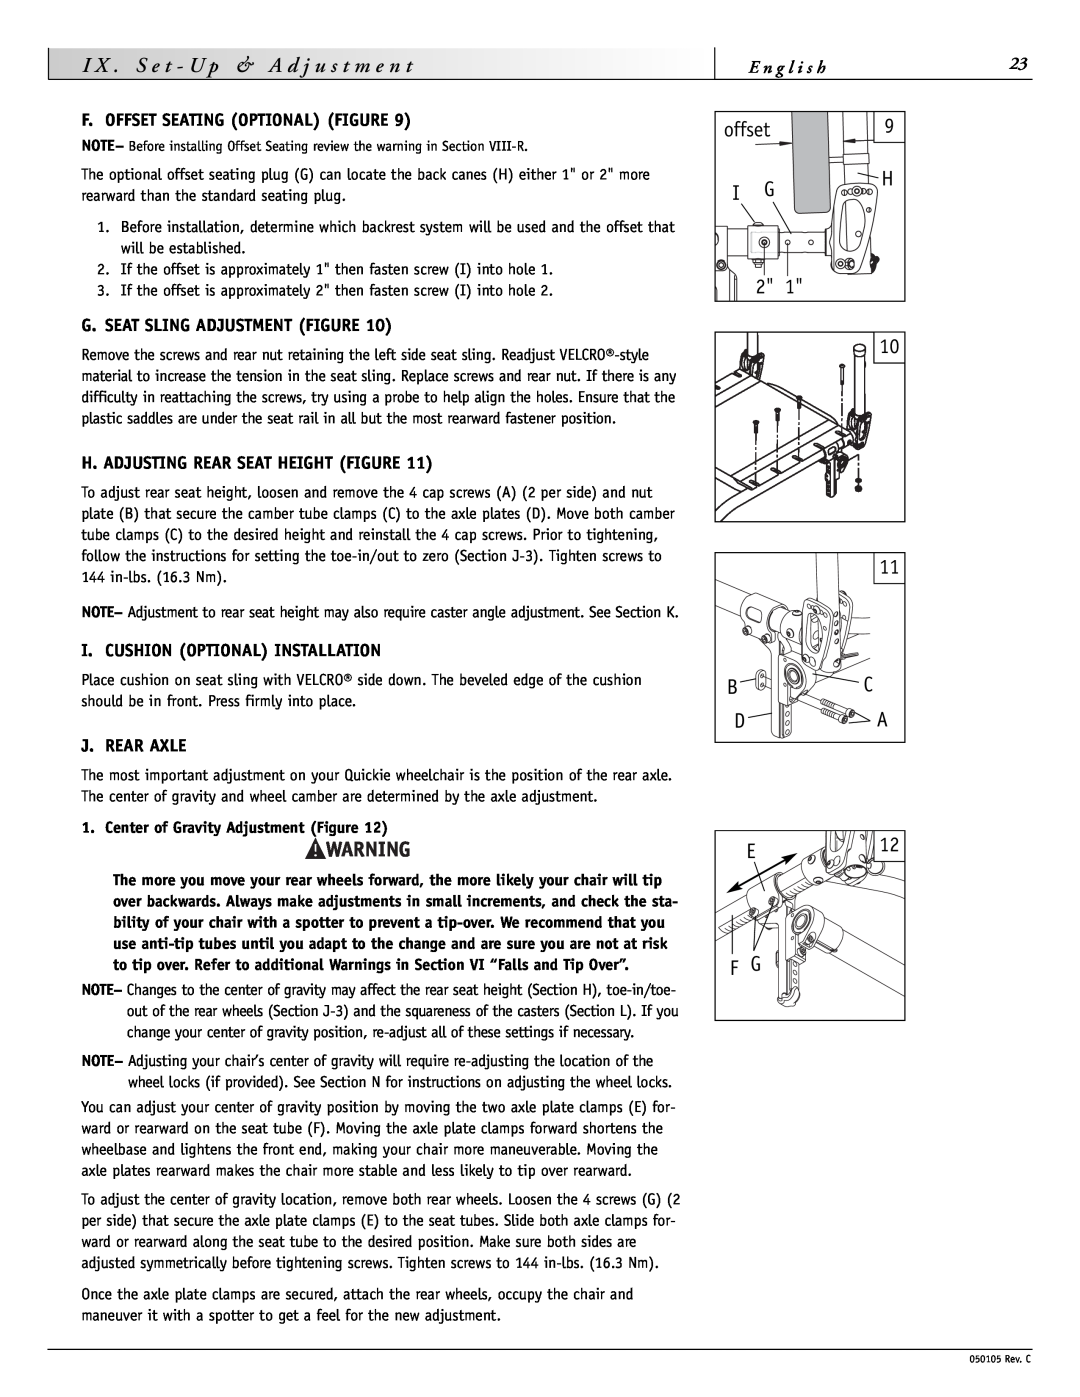 Sunrise Medical GT instruction manual offset 